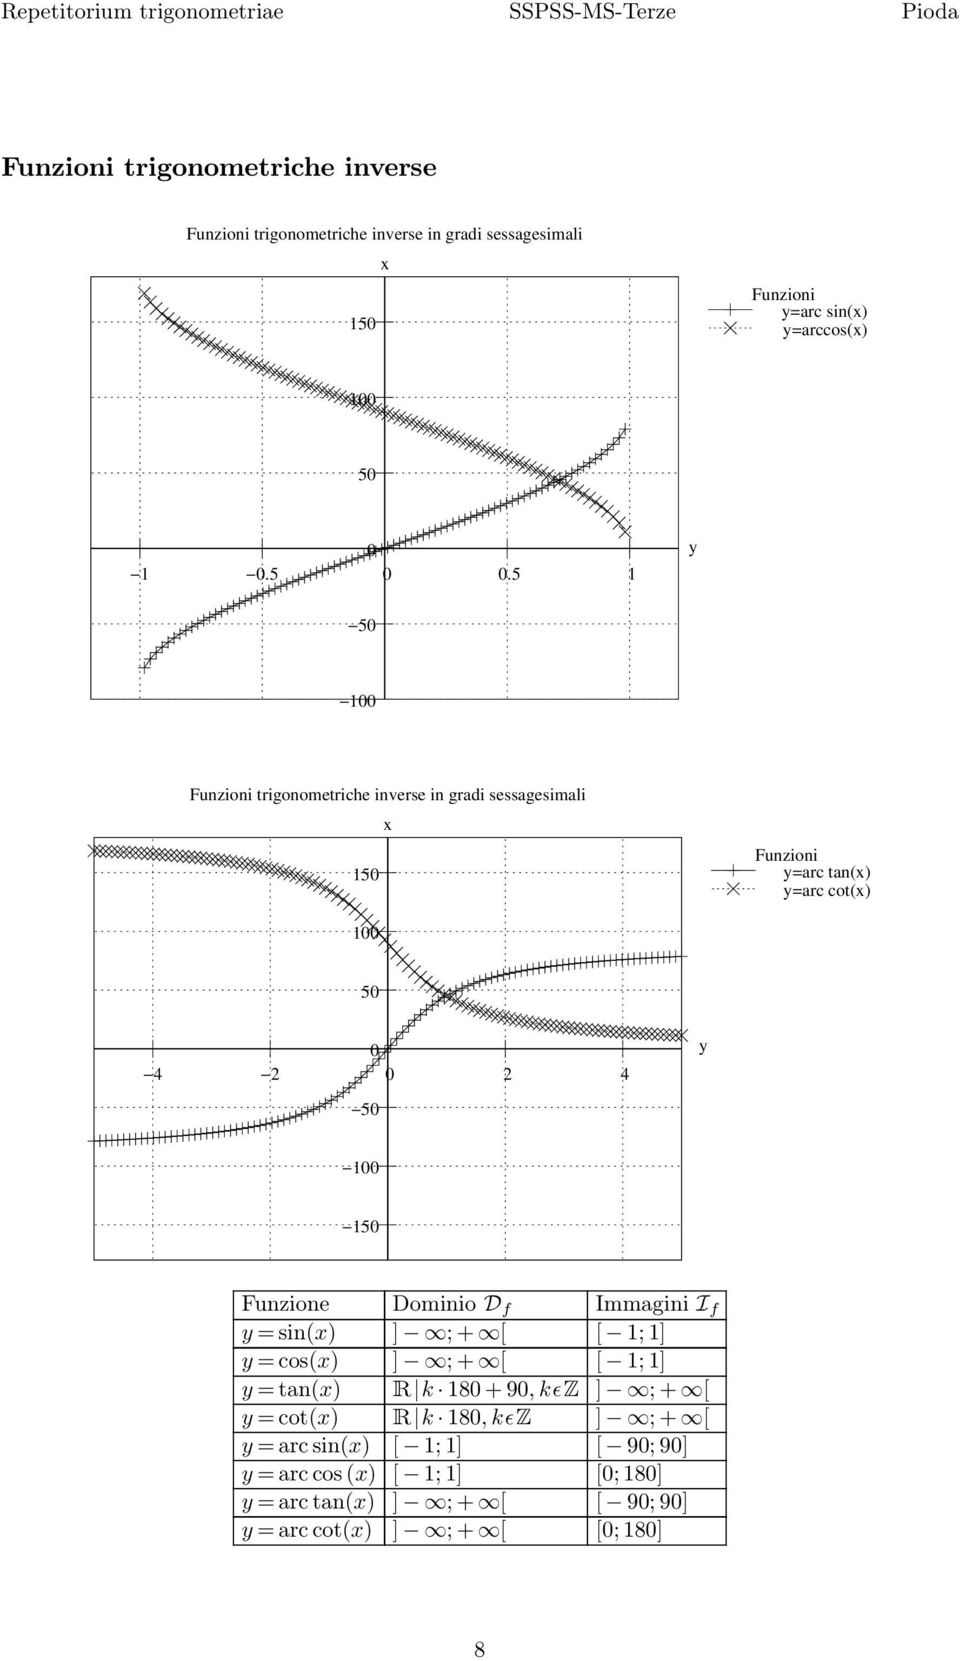 0 00 Funzioni trigonometriche inverse in gradi sessagesimali 0 Funzioni =arc tan() =arc cot() 00 0 0 4 0 4 0 00 0 Funzione